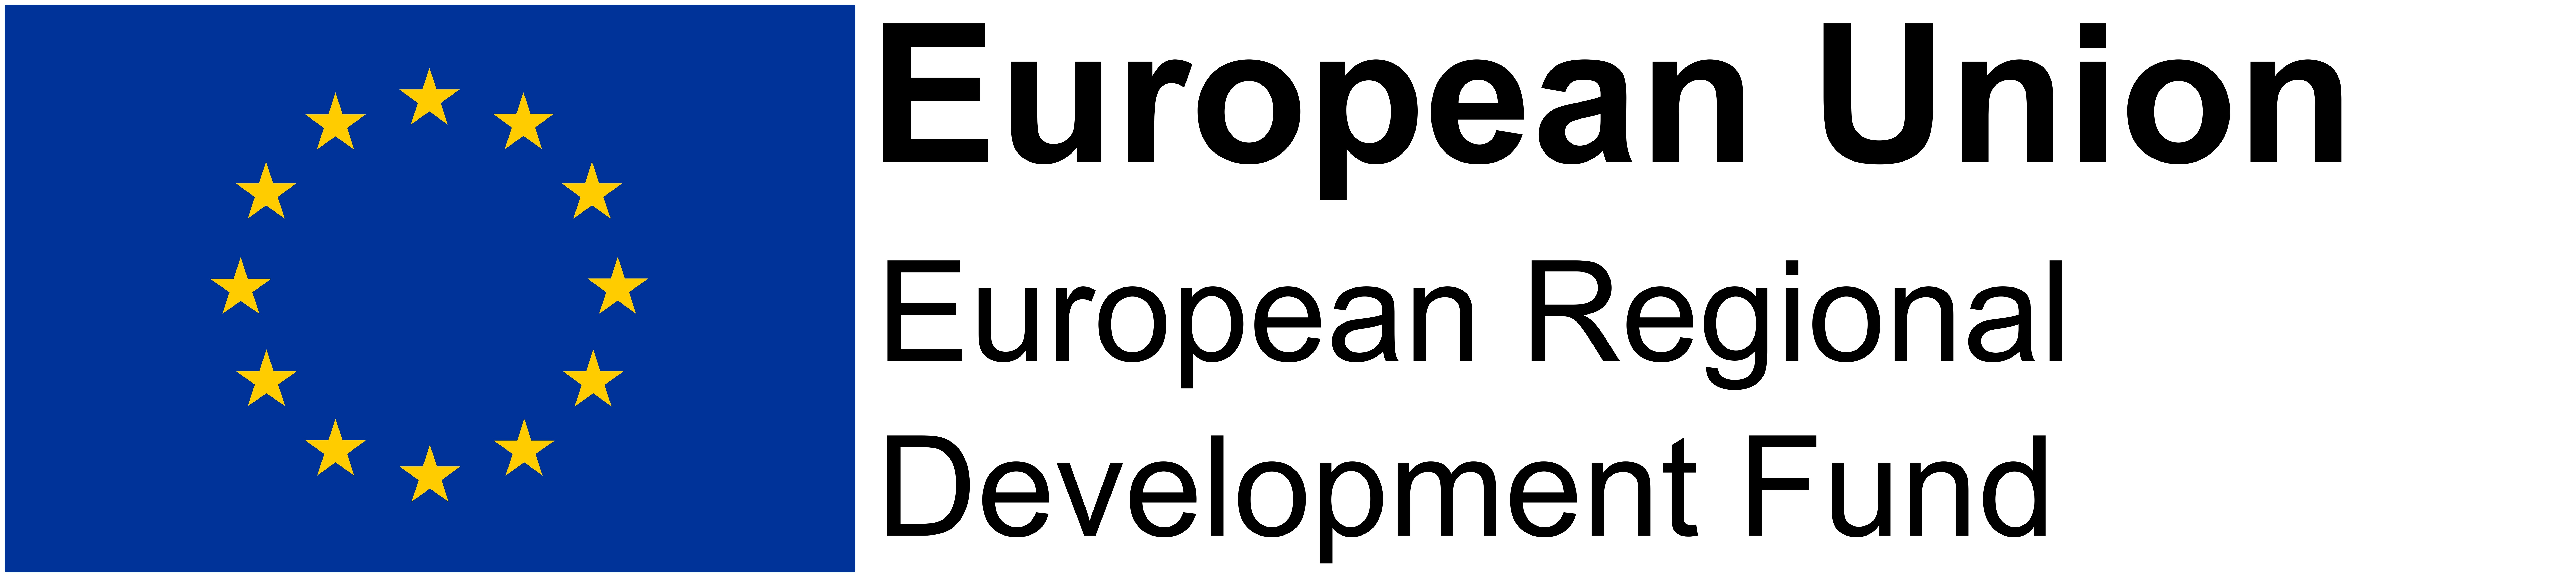 European Union LOGO: European Regional Developemnt  Fund